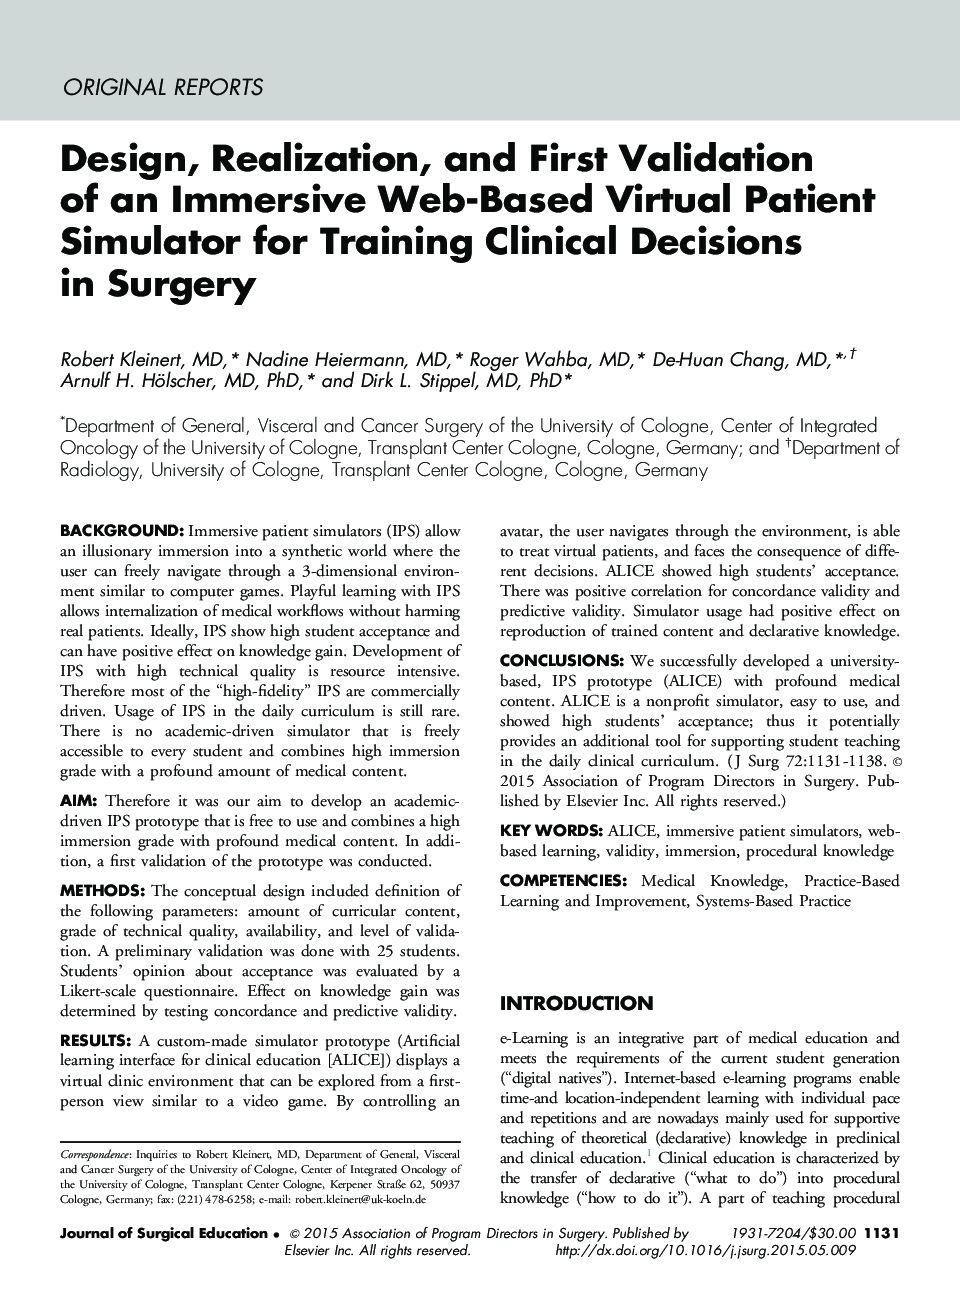 طراحی، تحقق و تایید اولیه یک شبیه ساز مجازی مبتنی بر وب مبتنی بر وب برای آموزش تصمیم گیری بالینی در جراحی 